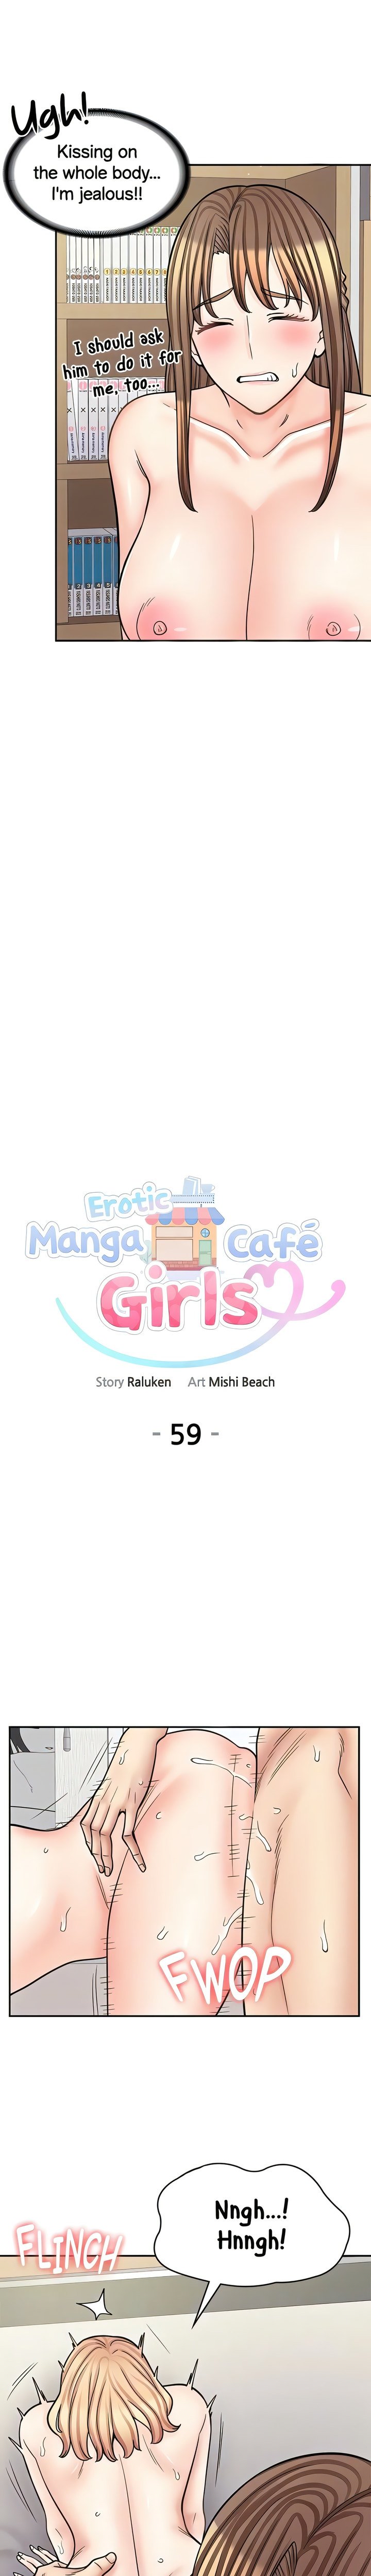 erotic-manga-cafe-girls-chap-59-6